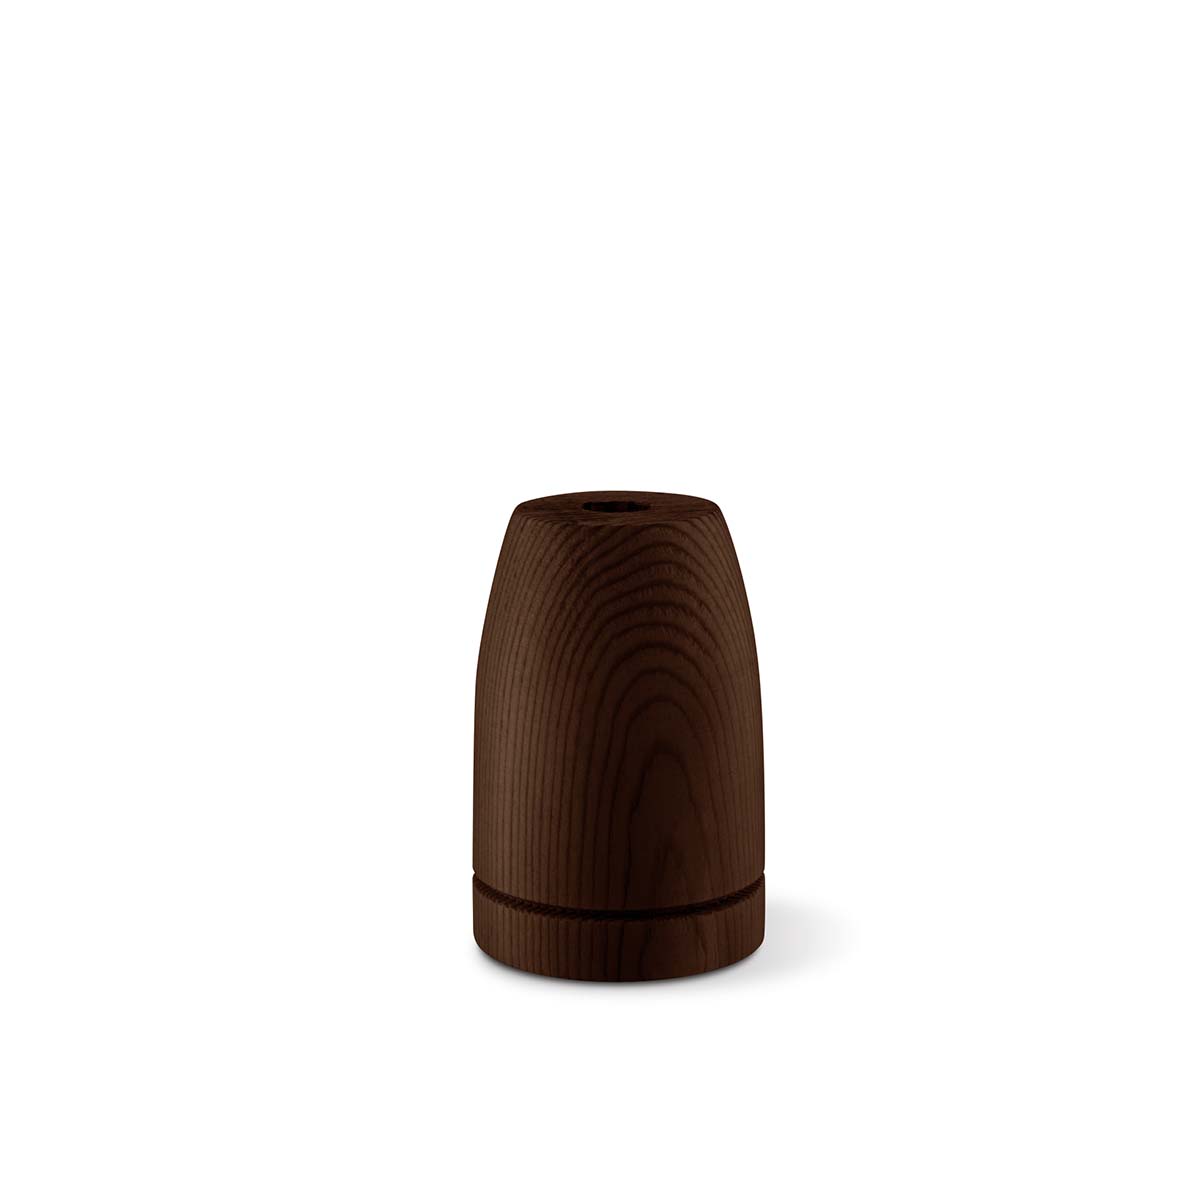 Tangla lighting - TLLH018BN - lamp holder wood - E27 - bullet - brown